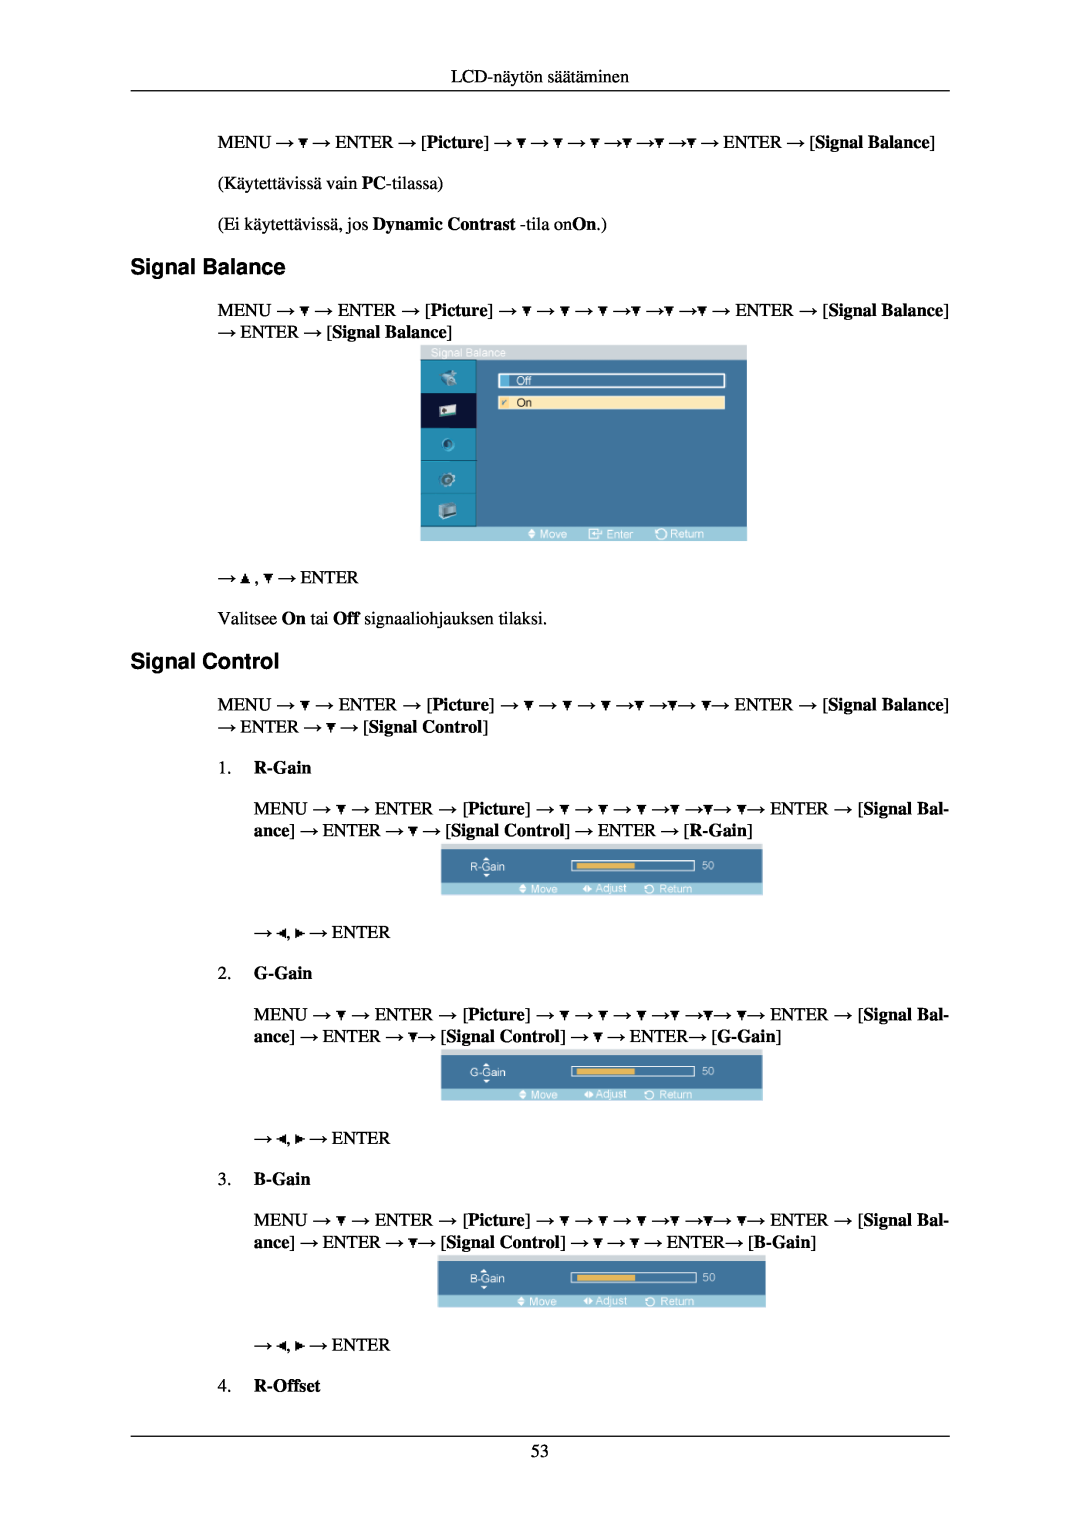 Samsung LH40TCQMBG/EN manual → ENTER → Signal Balance, → ENTER → → Signal Control 1. R-Gain, G-Gain, B-Gain, R-Offset 